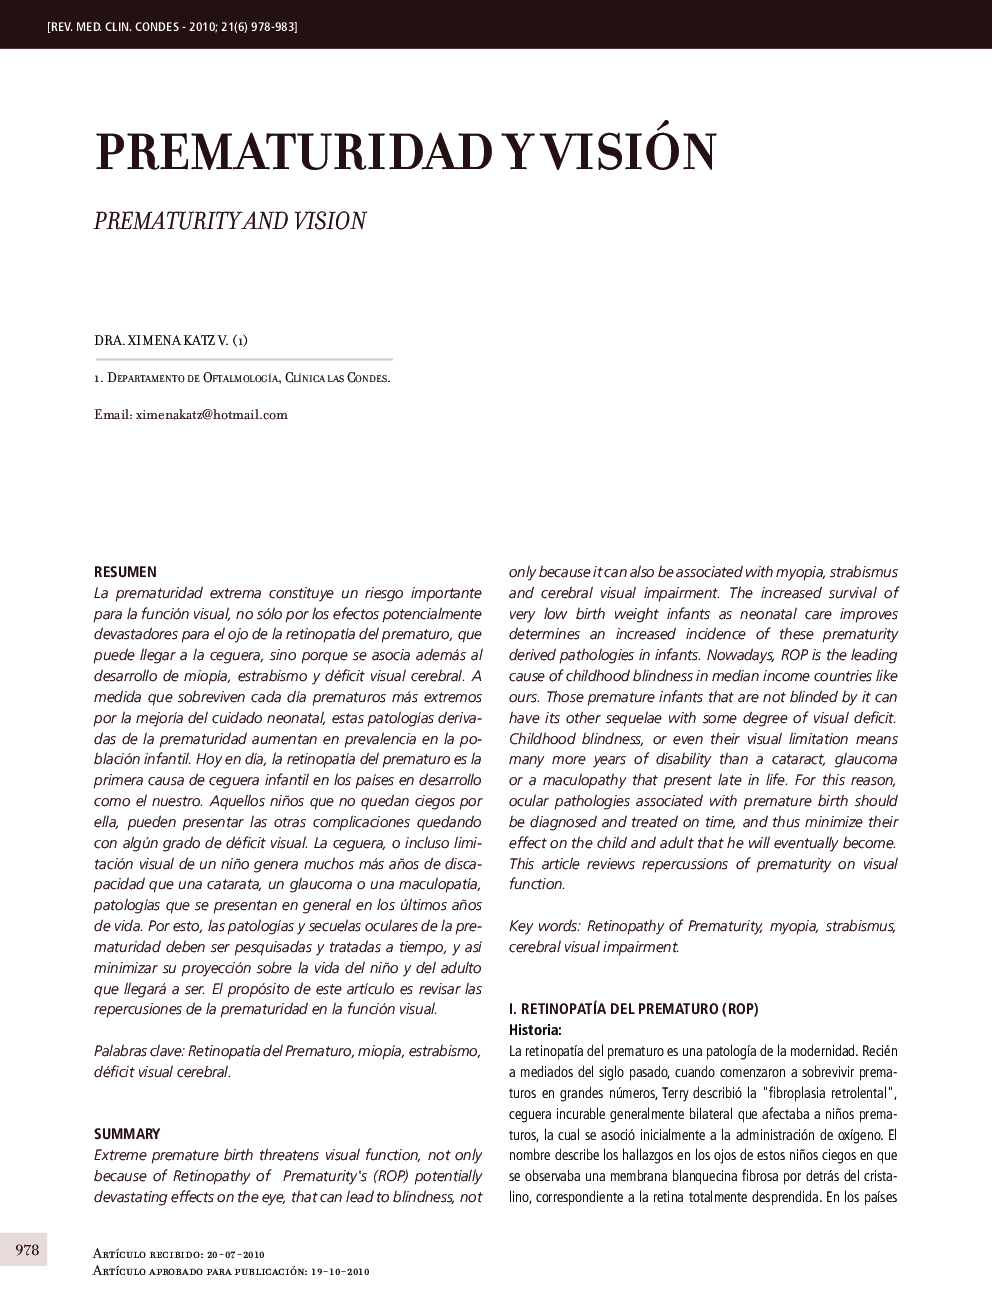 Prematuridad y visión